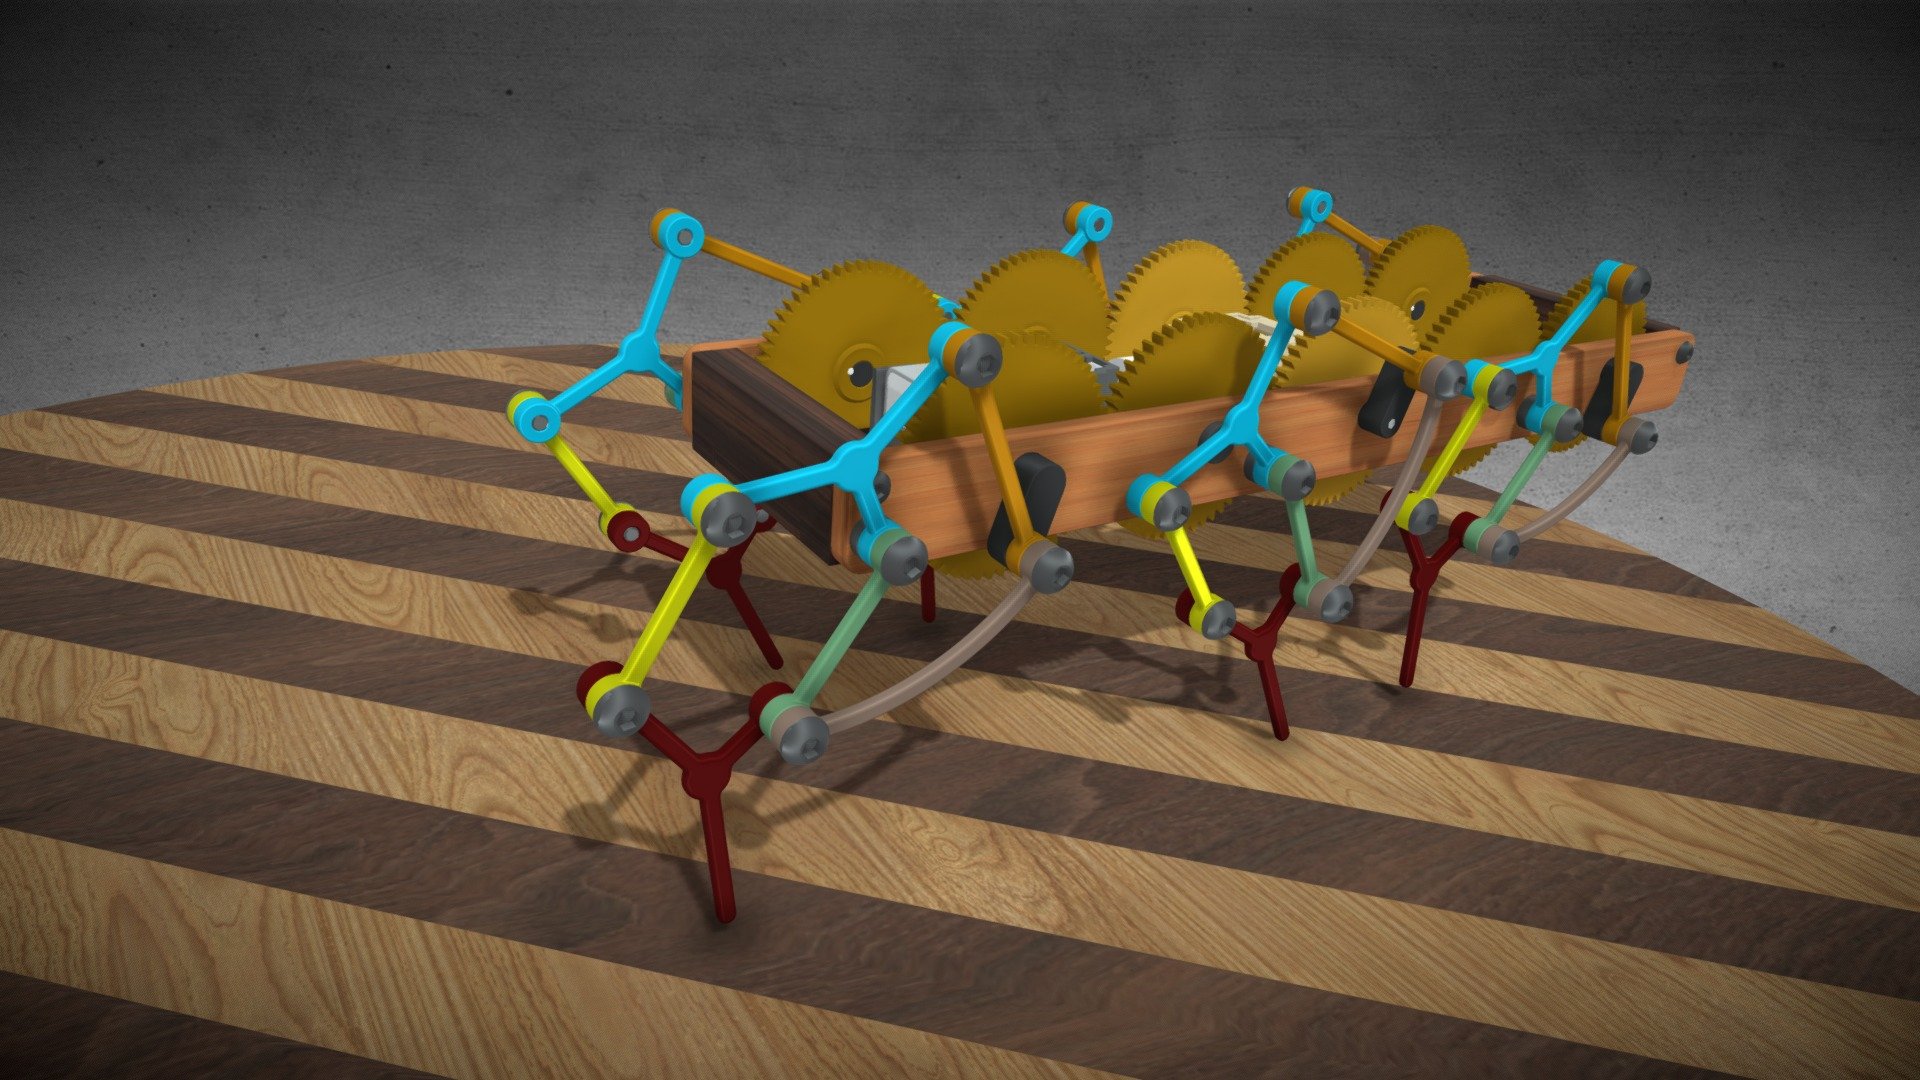 Hexapod Walking Machine Wooden Toy